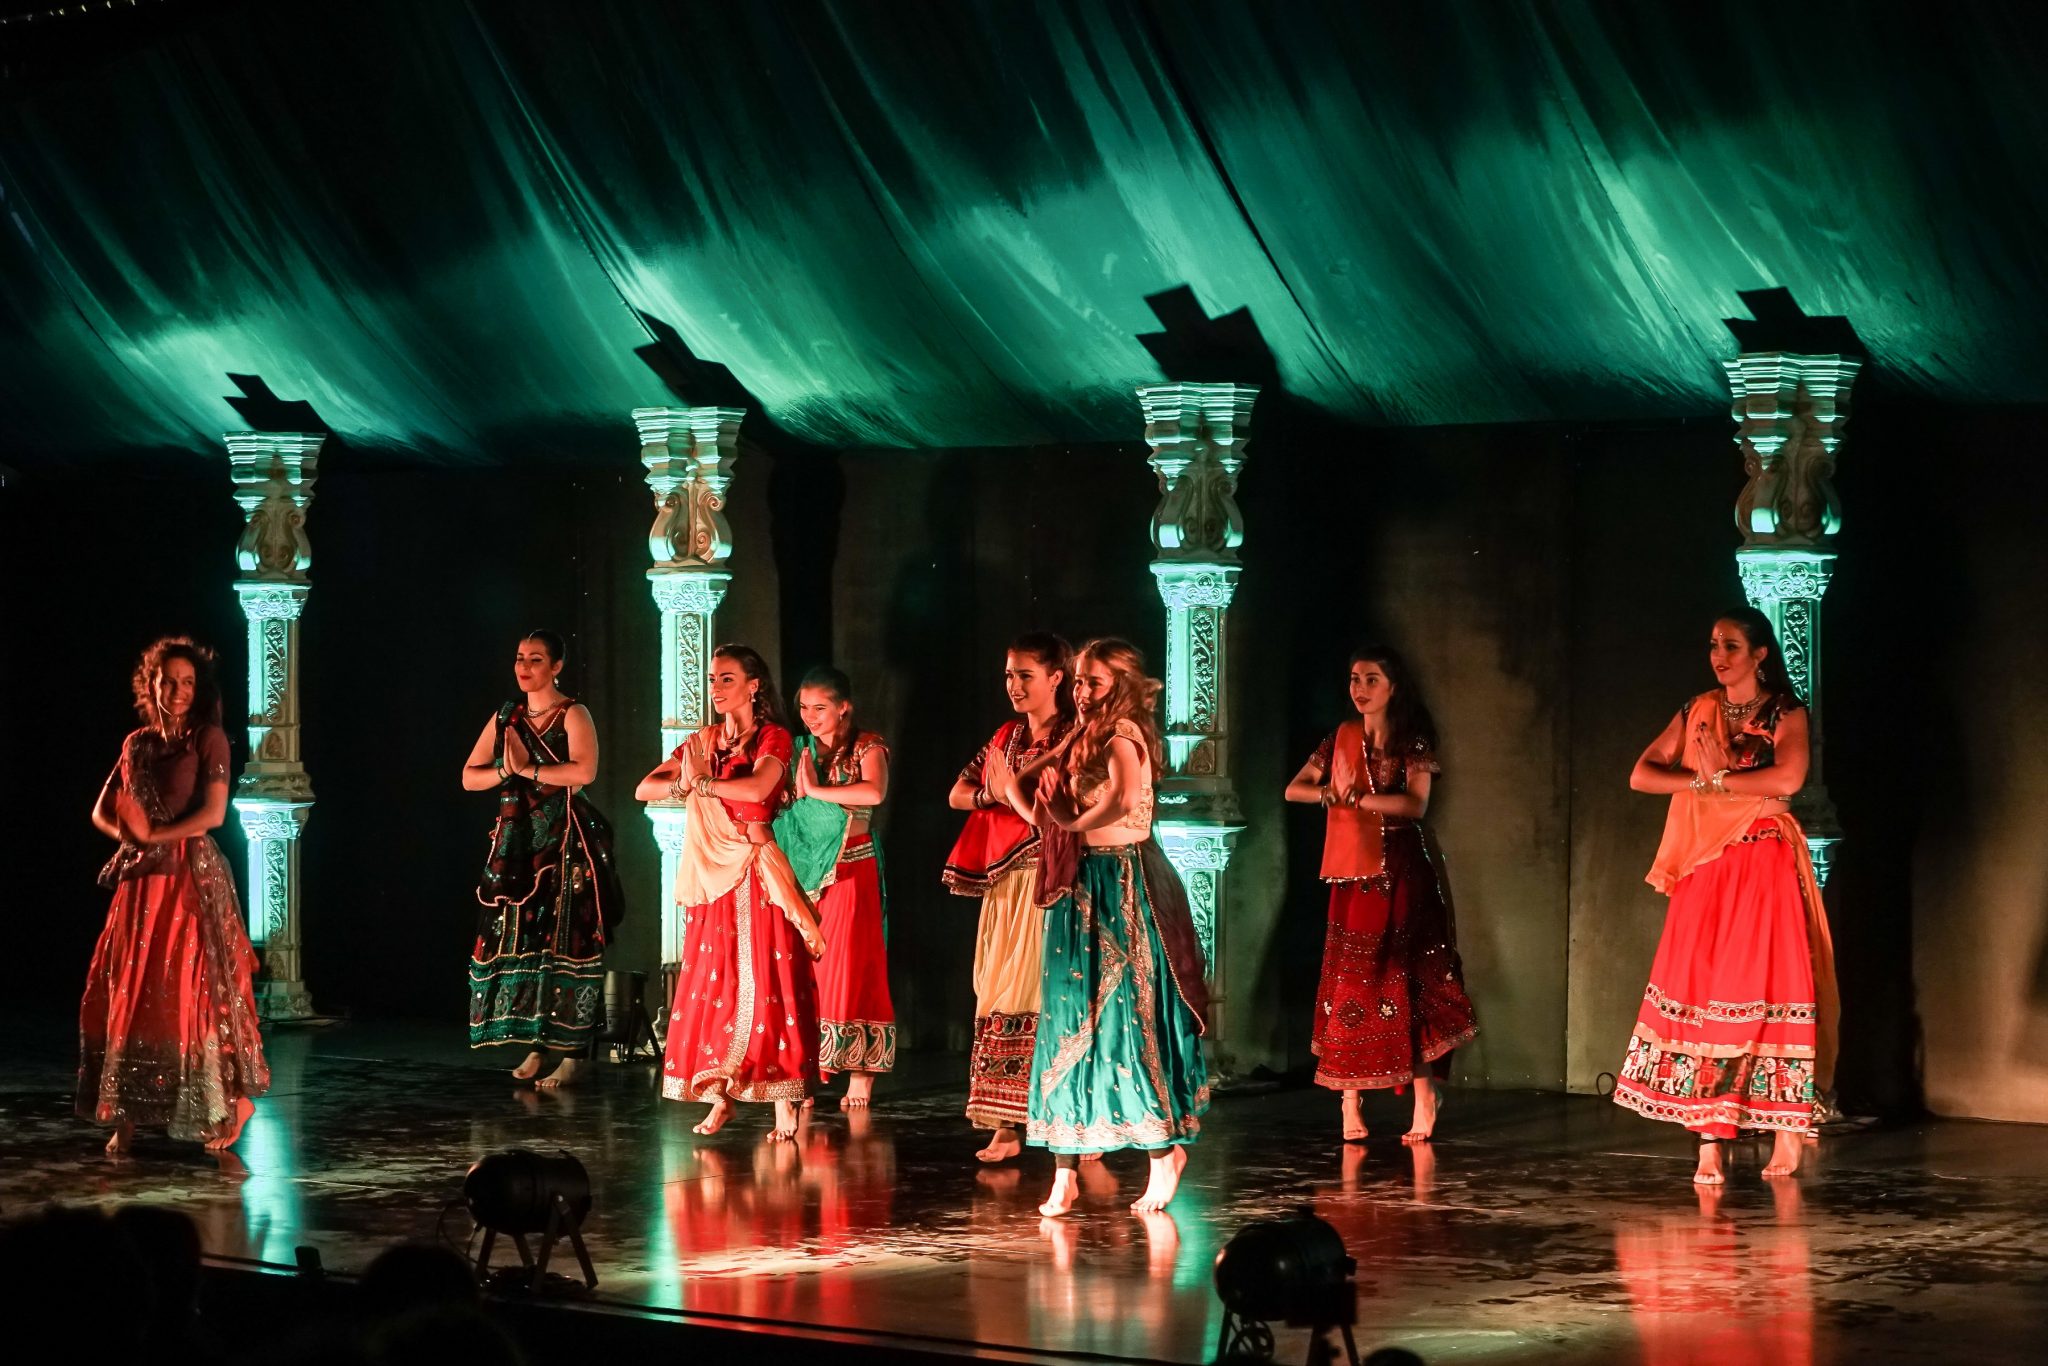 Raparigas com trajes hindus a dançar